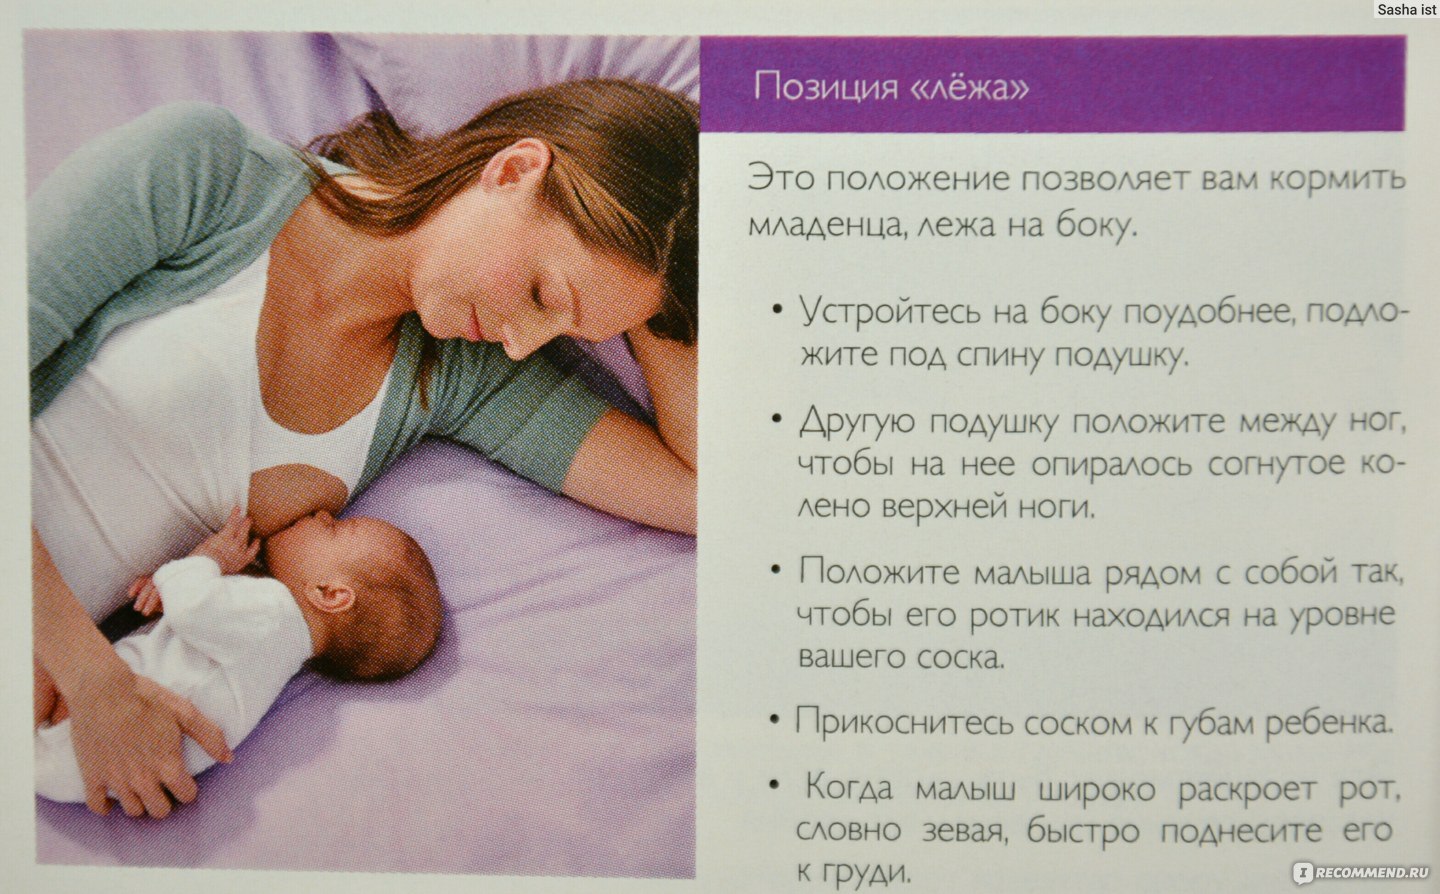 Прикладывание новорожденного к груди лежа